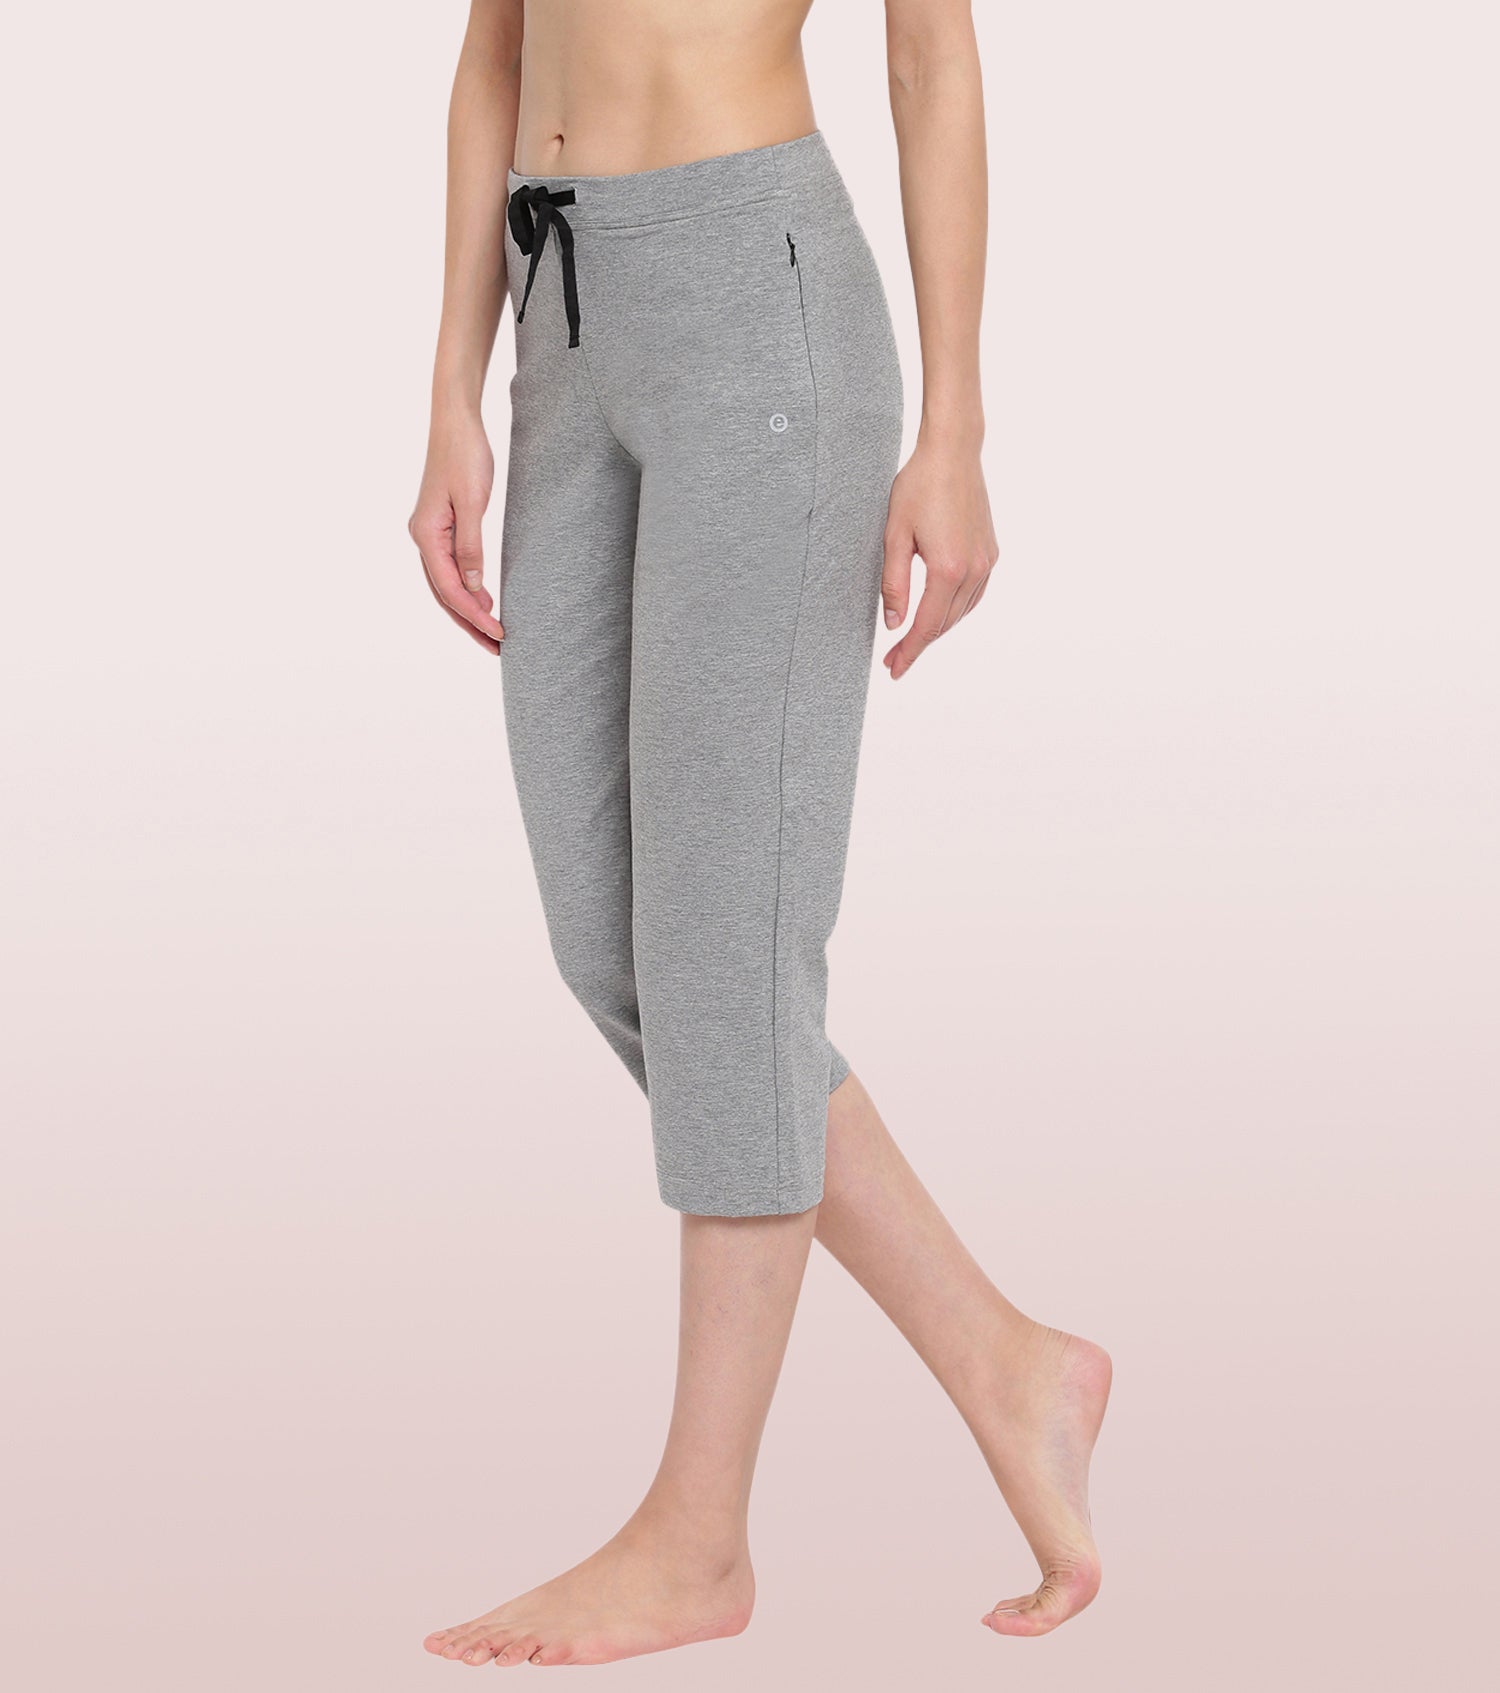 Jockey Grey Melange Printed Capri Pants for Women1300LGMPR